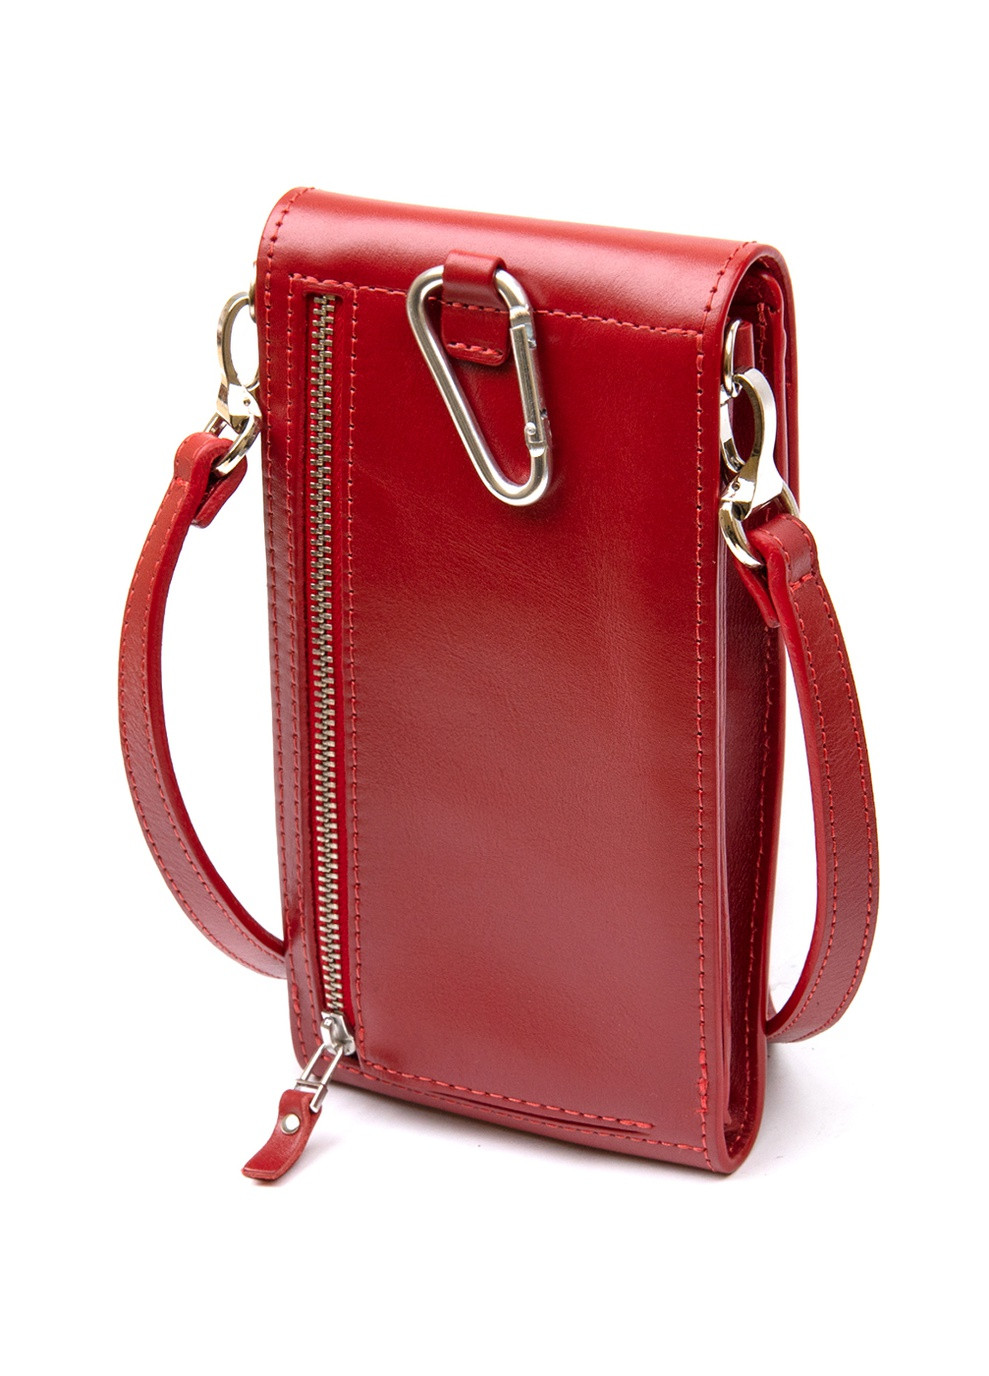 Женская кожаная сумка-кошелек 20х10х2 см Grande Pelle (250097310)